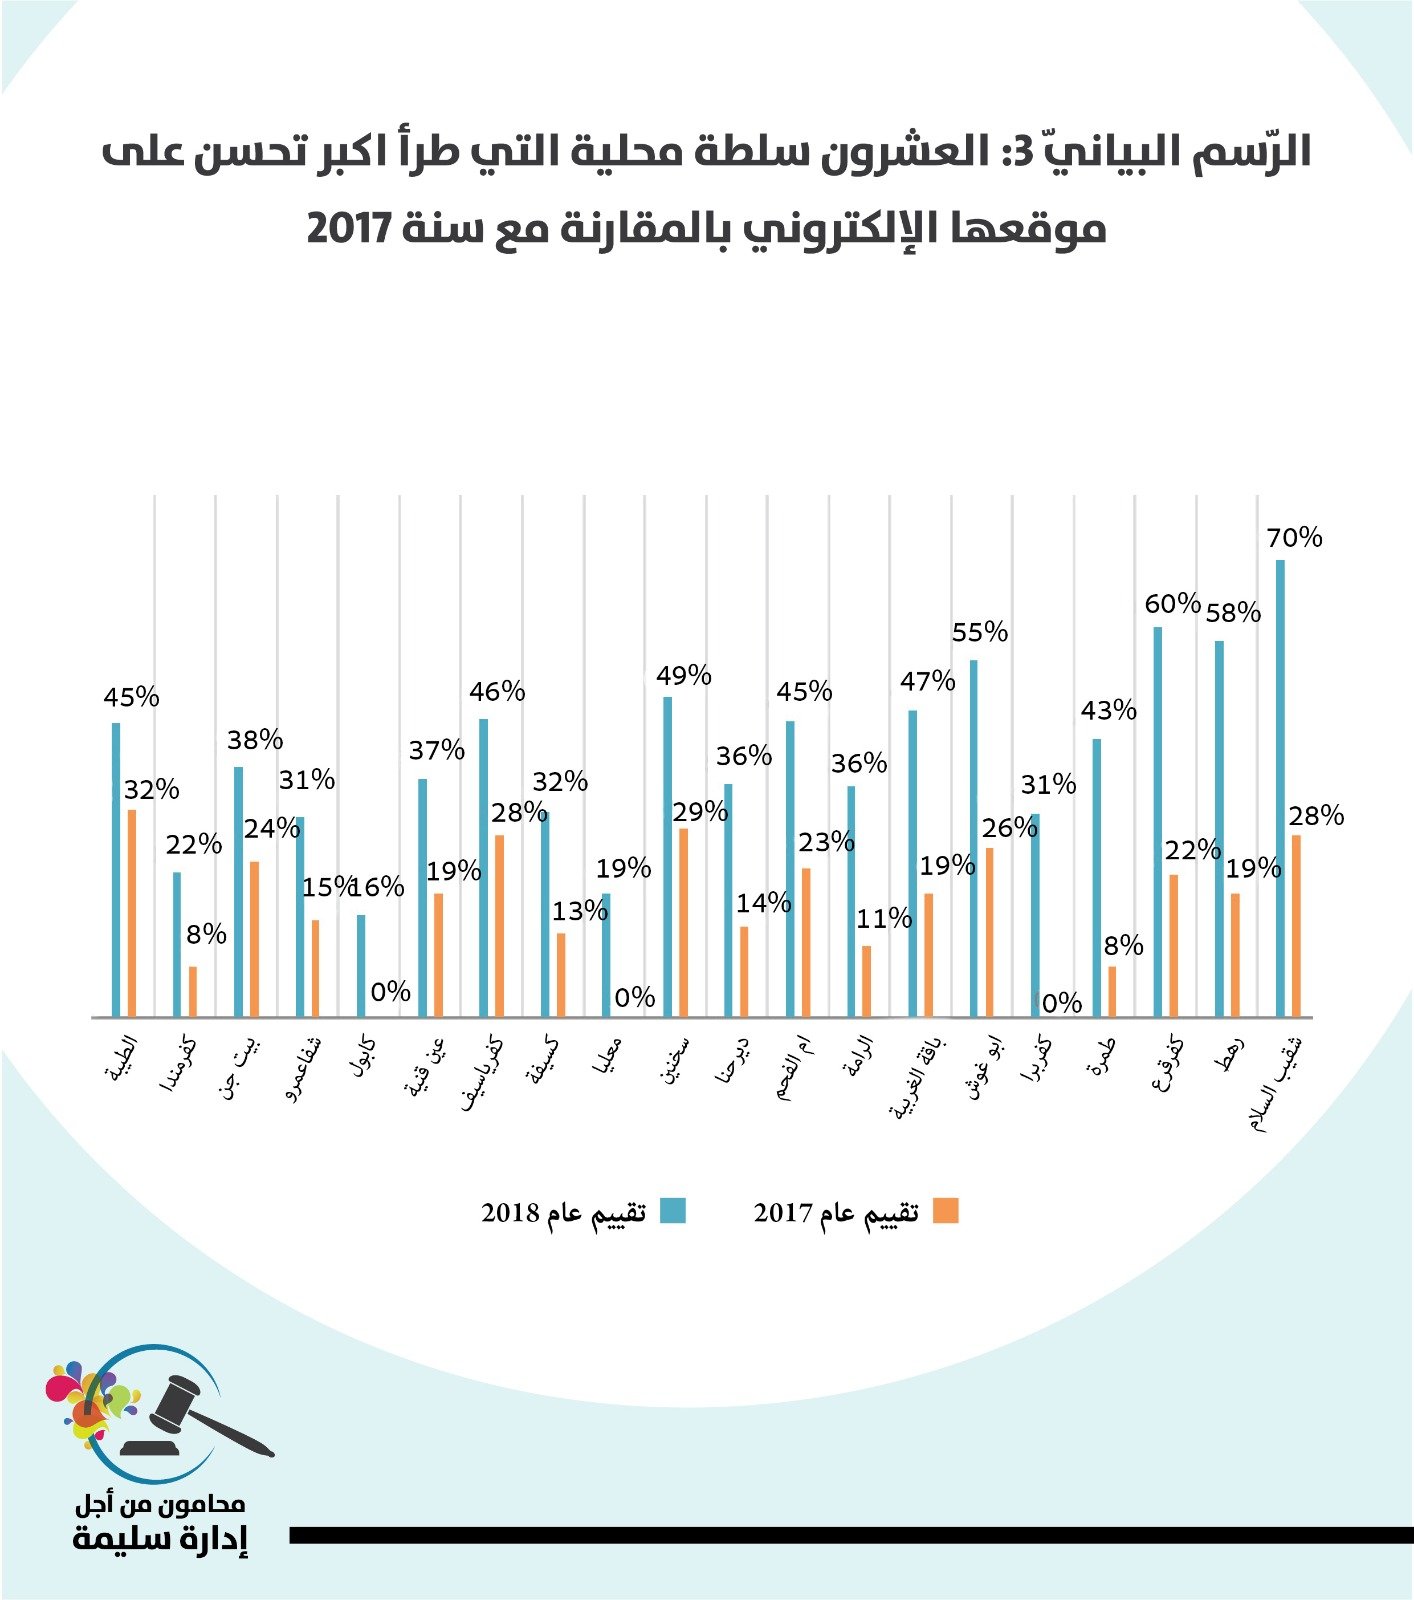 مؤشر الشفافية 2018 يكشف صورة قاتمة عن مستوى الشفافية في السّلطات المحليّة العربيّة.-3